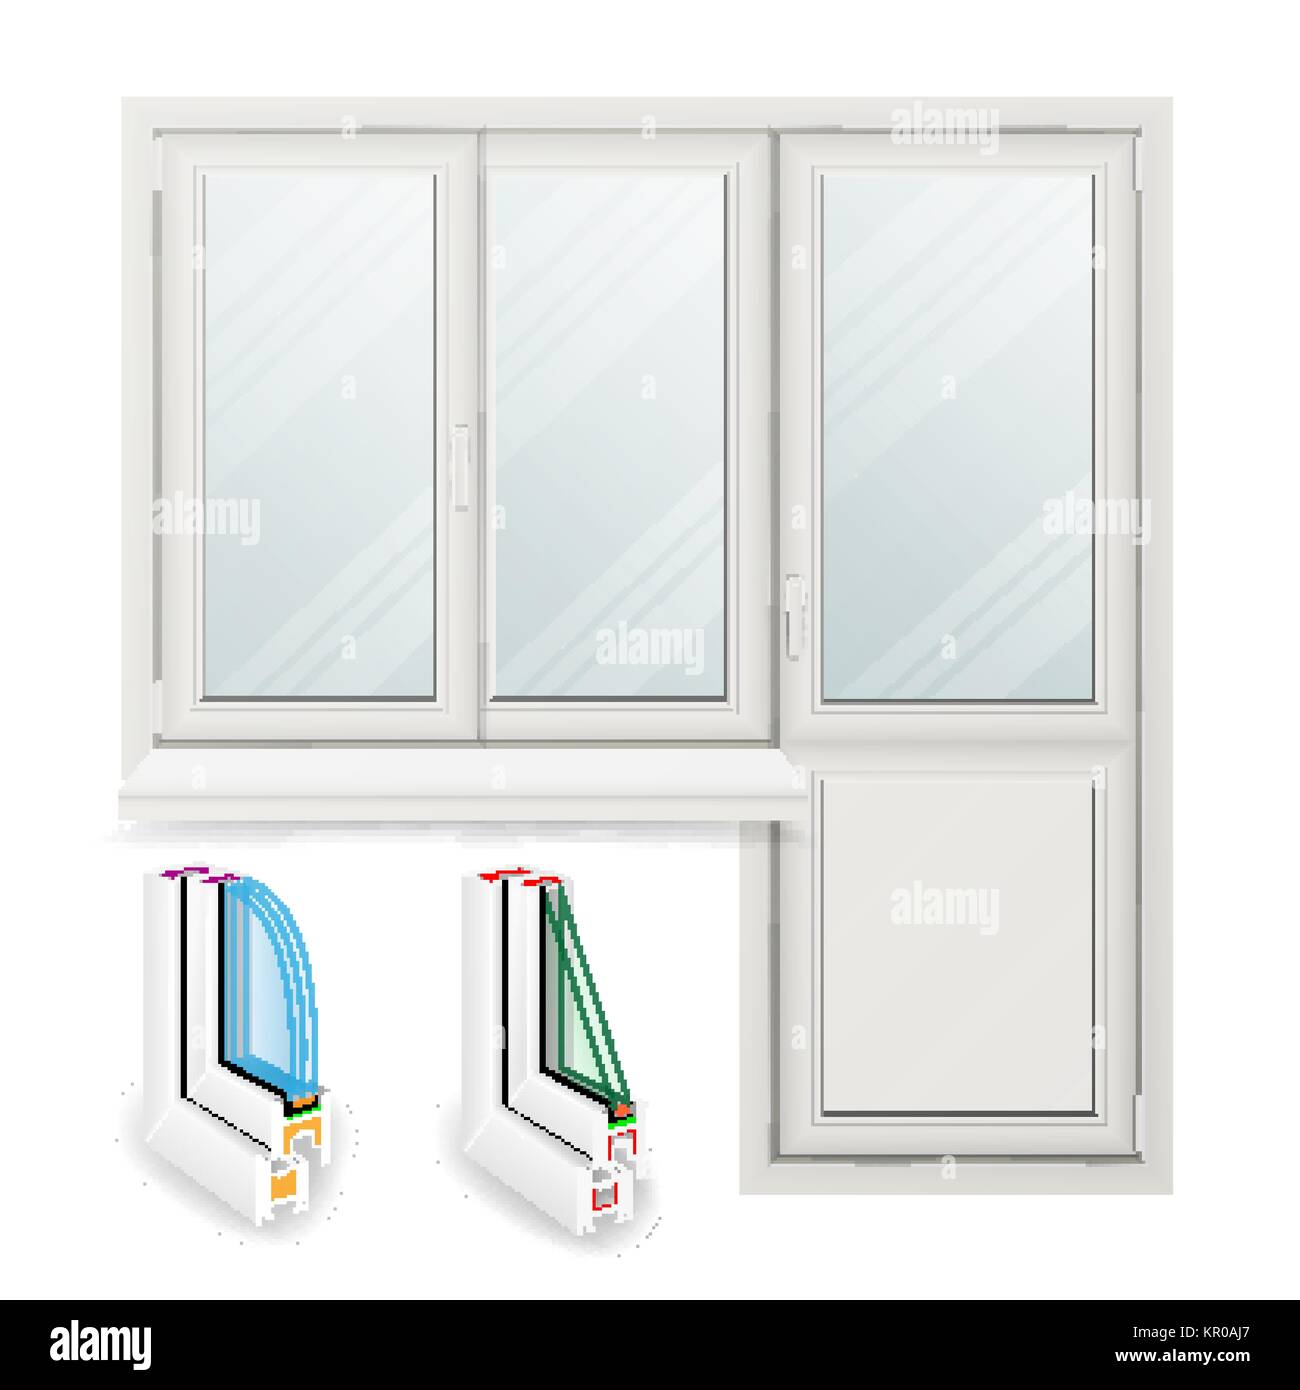 Kunststoff Fenster Vektor. Geöffnete Tür. Home weißes Fenster Design Konzept. Auf weissem Hintergrund Abbildung isoliert Stock Vektor